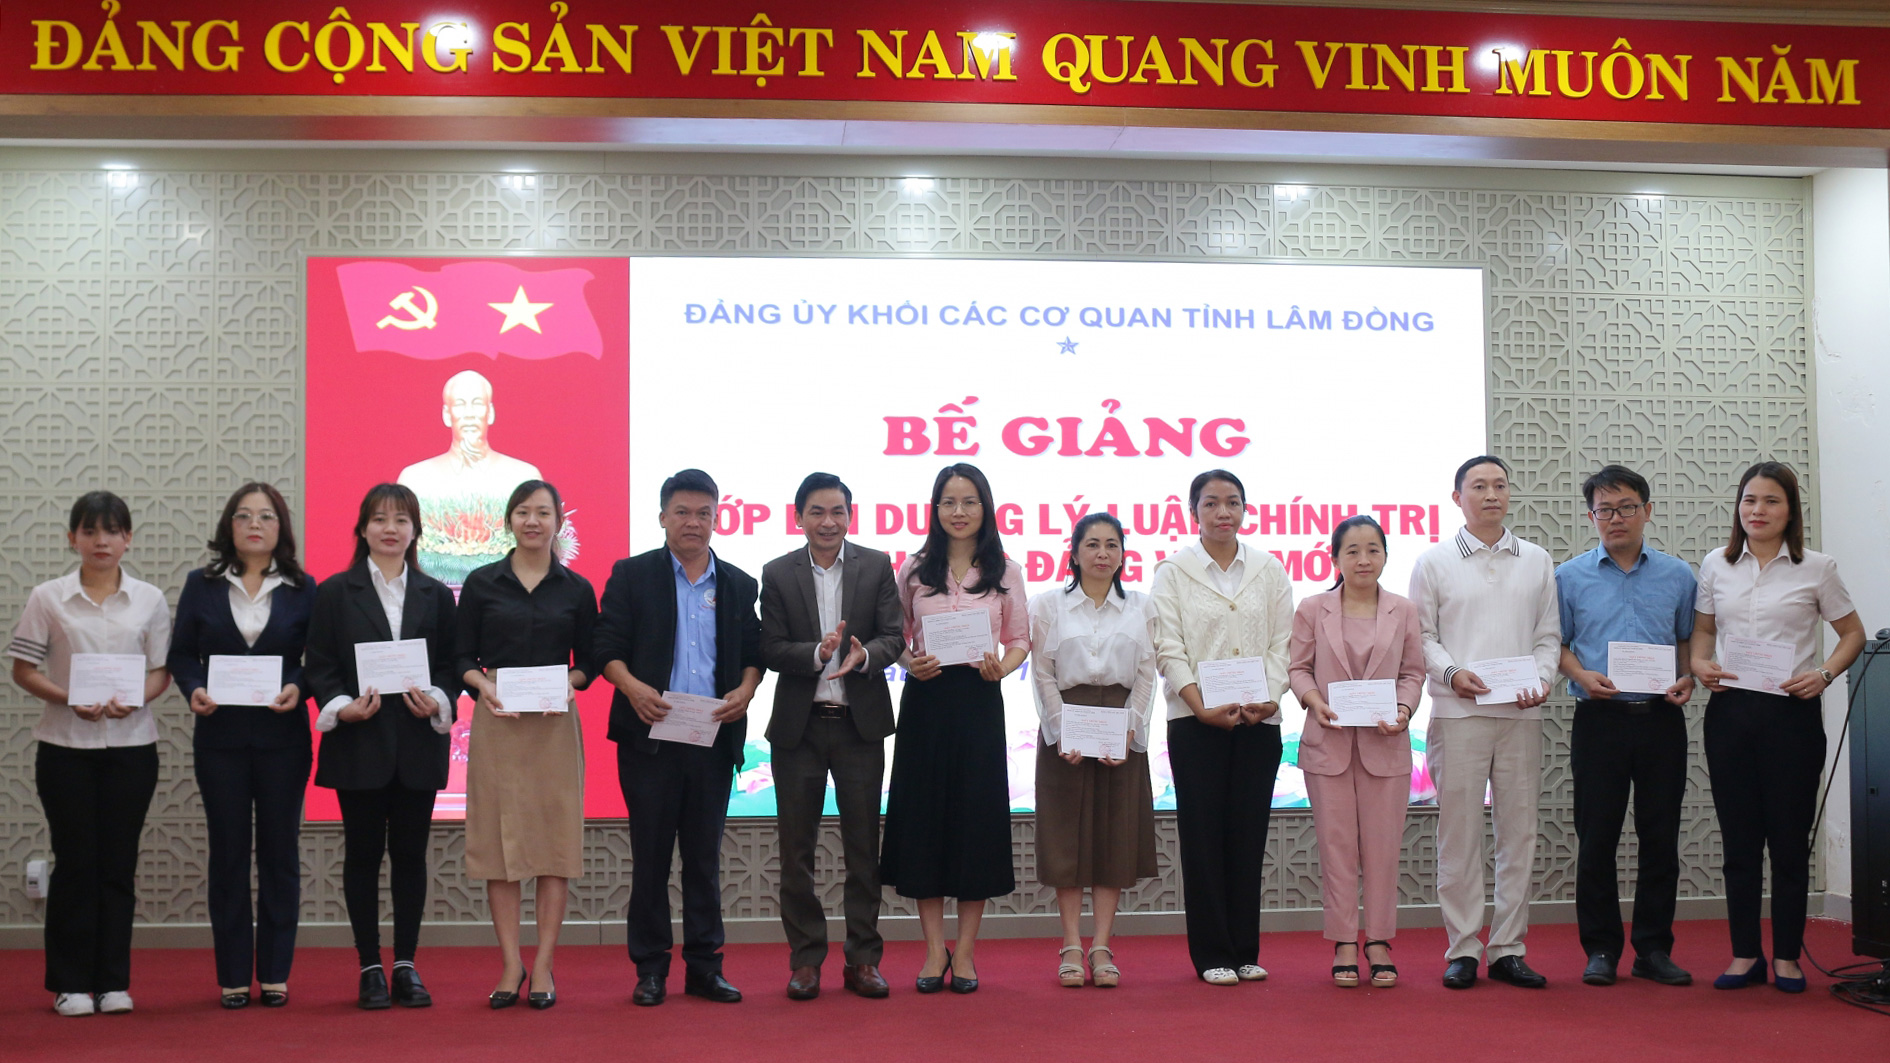 Đồng chí Nguyễn Văn Bằng - Chánh Văn phòng Đảng ủy khối trao giấy chứng nhận cho các học viên